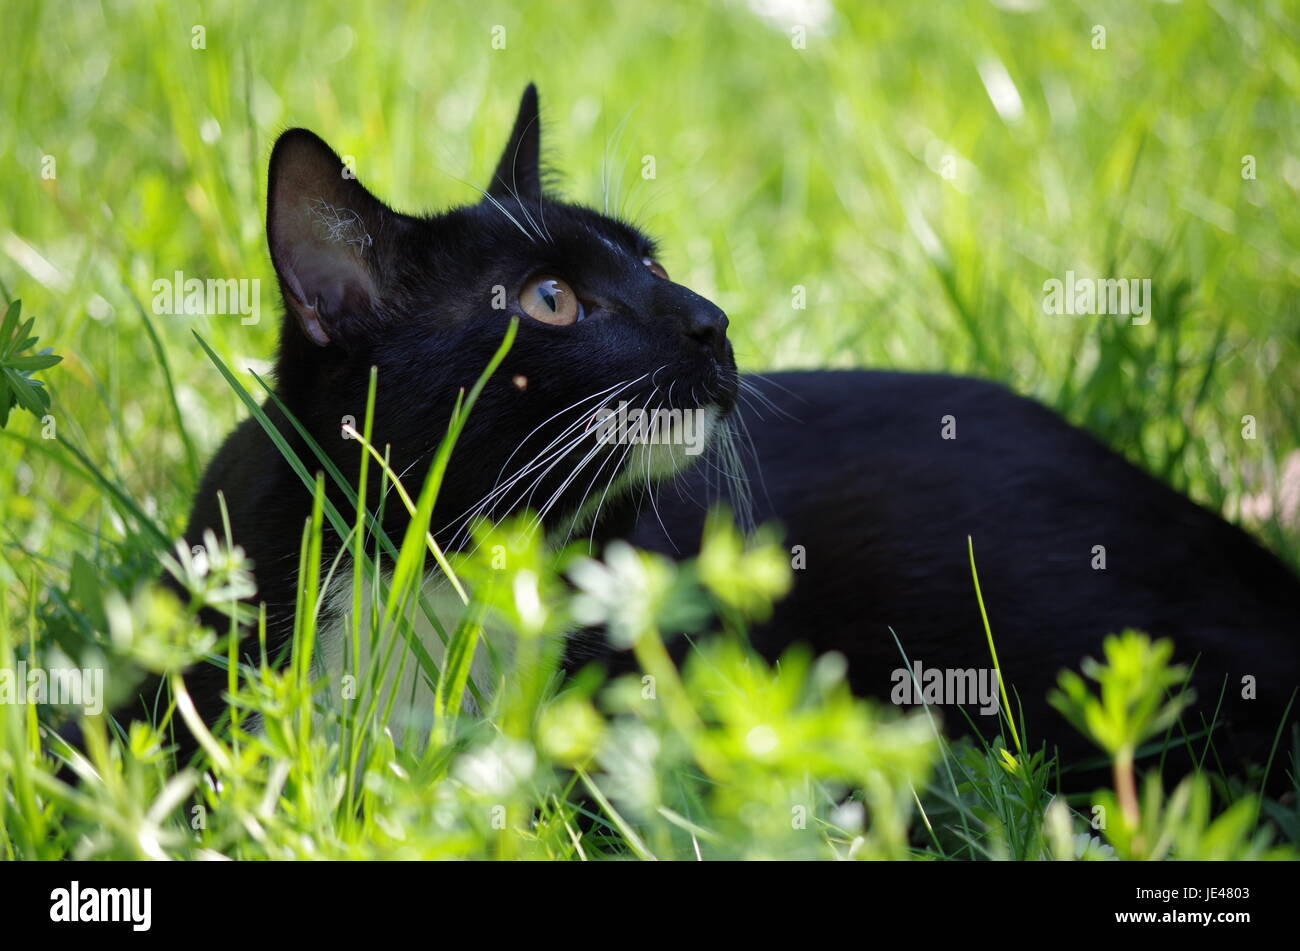 Schwarze katze junge katze Foto de stock